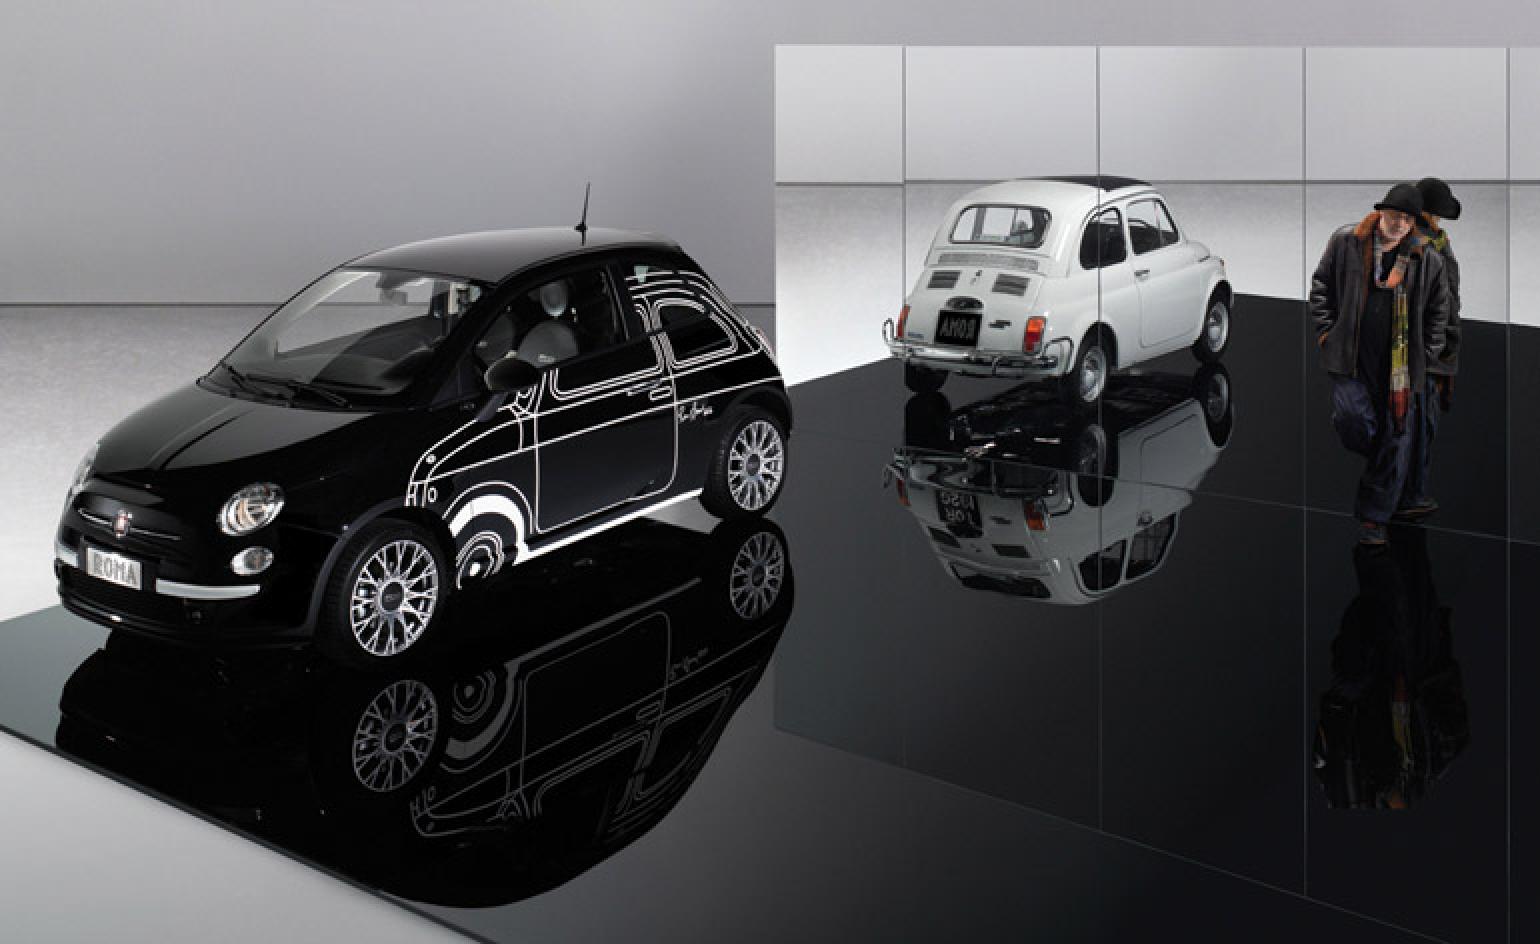 Fiat 500 Ron Arad , HD Wallpaper & Backgrounds